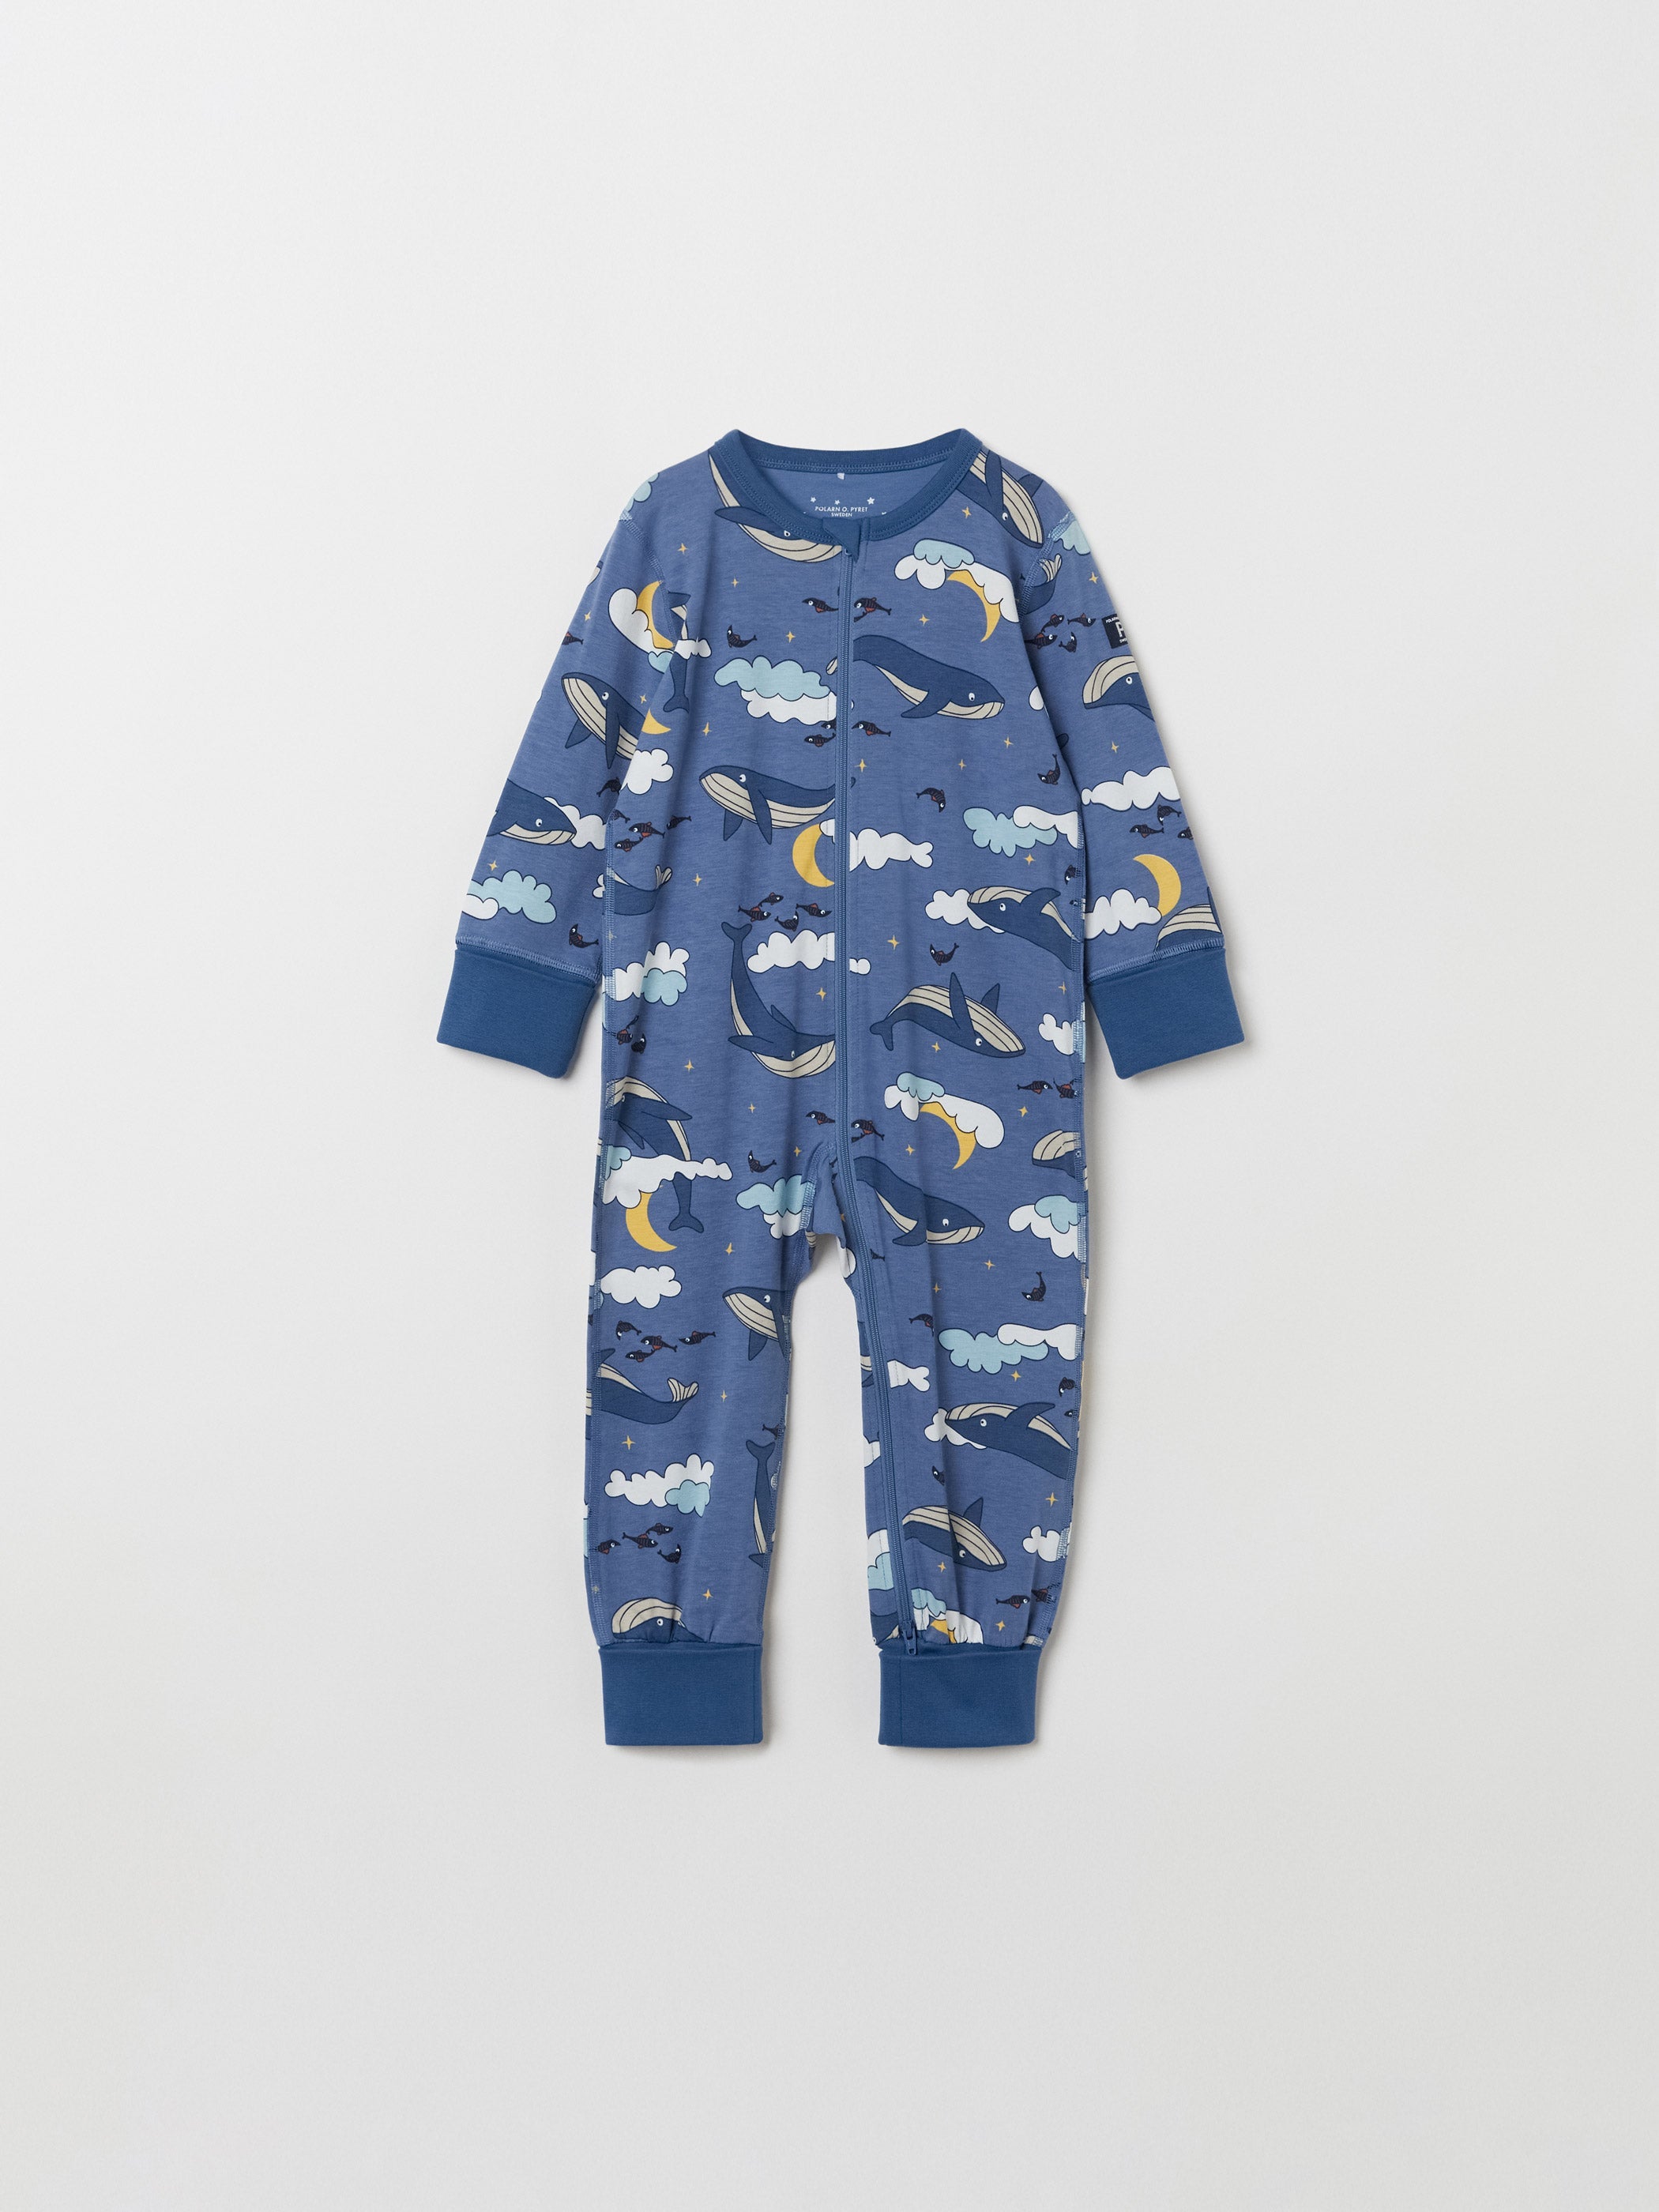 Whale Print Kids Sleepsuit